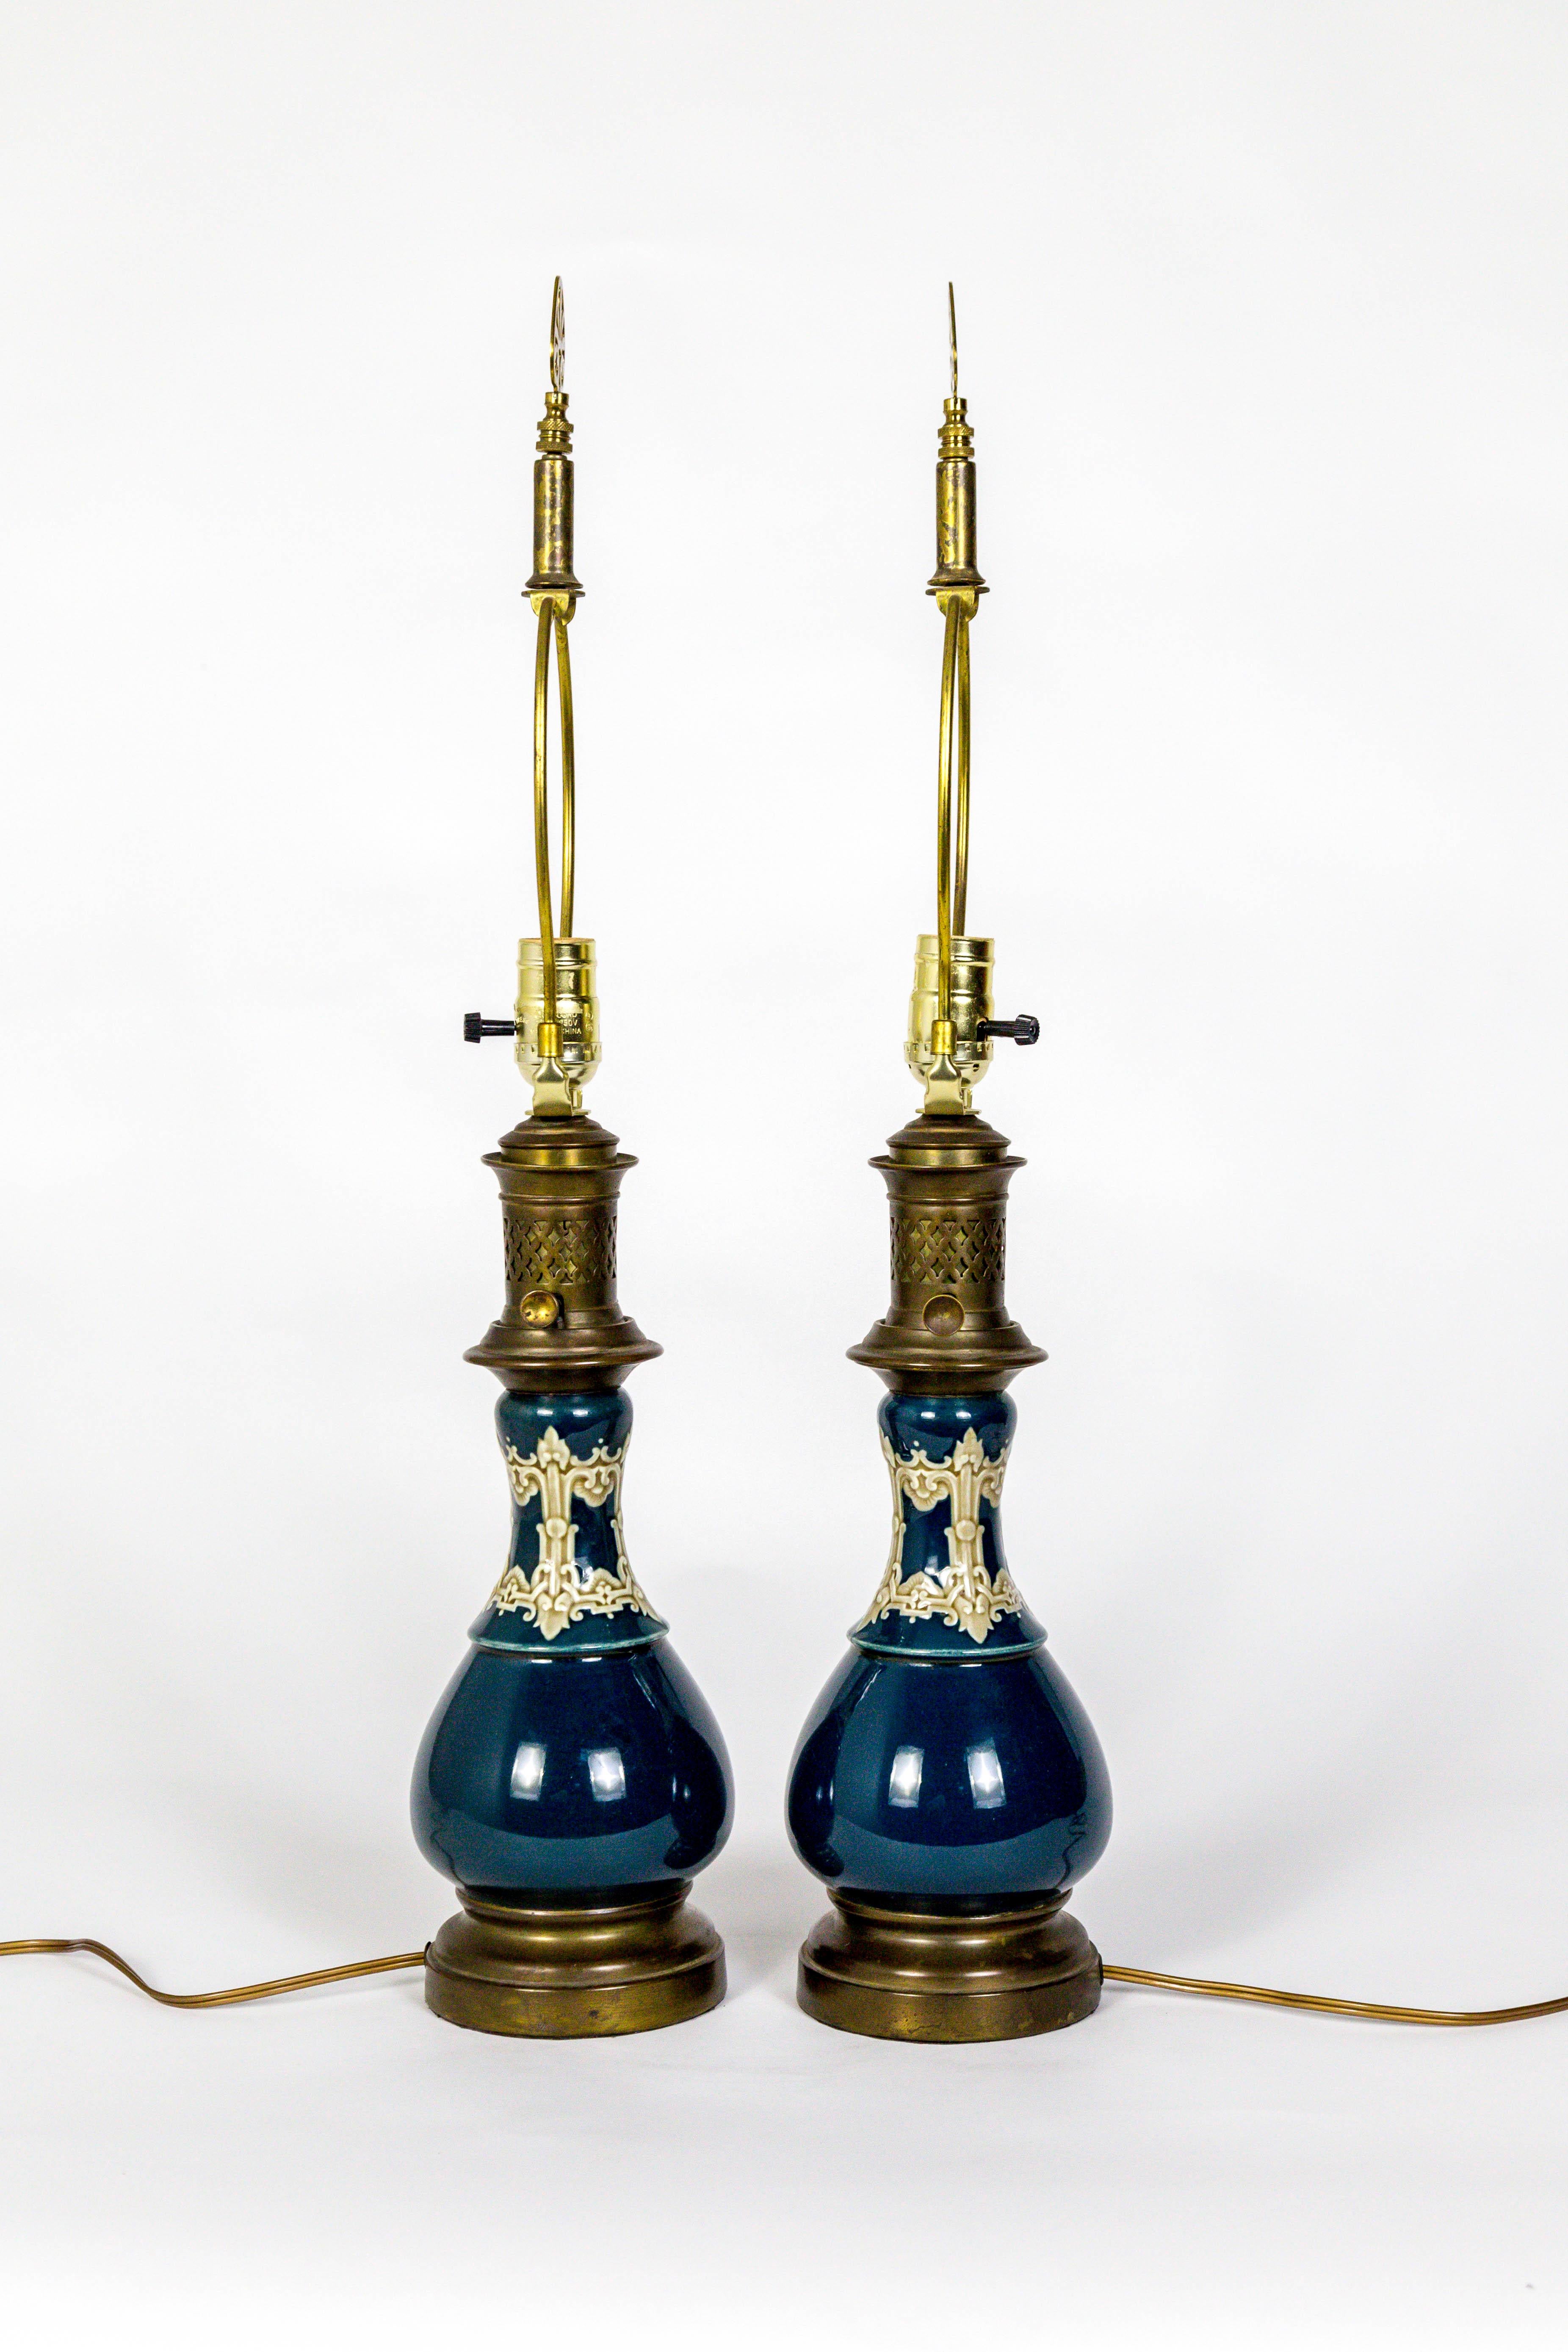 Une belle paire de lampes à pétrole en céramique, fin du 19ème siècle, converties en turquoise foncé avec des détails modelés en vert boueux et crème. Merveilleuses cheminées et clés en laiton, avec fleurons en laiton. Hollandais, années 1880.